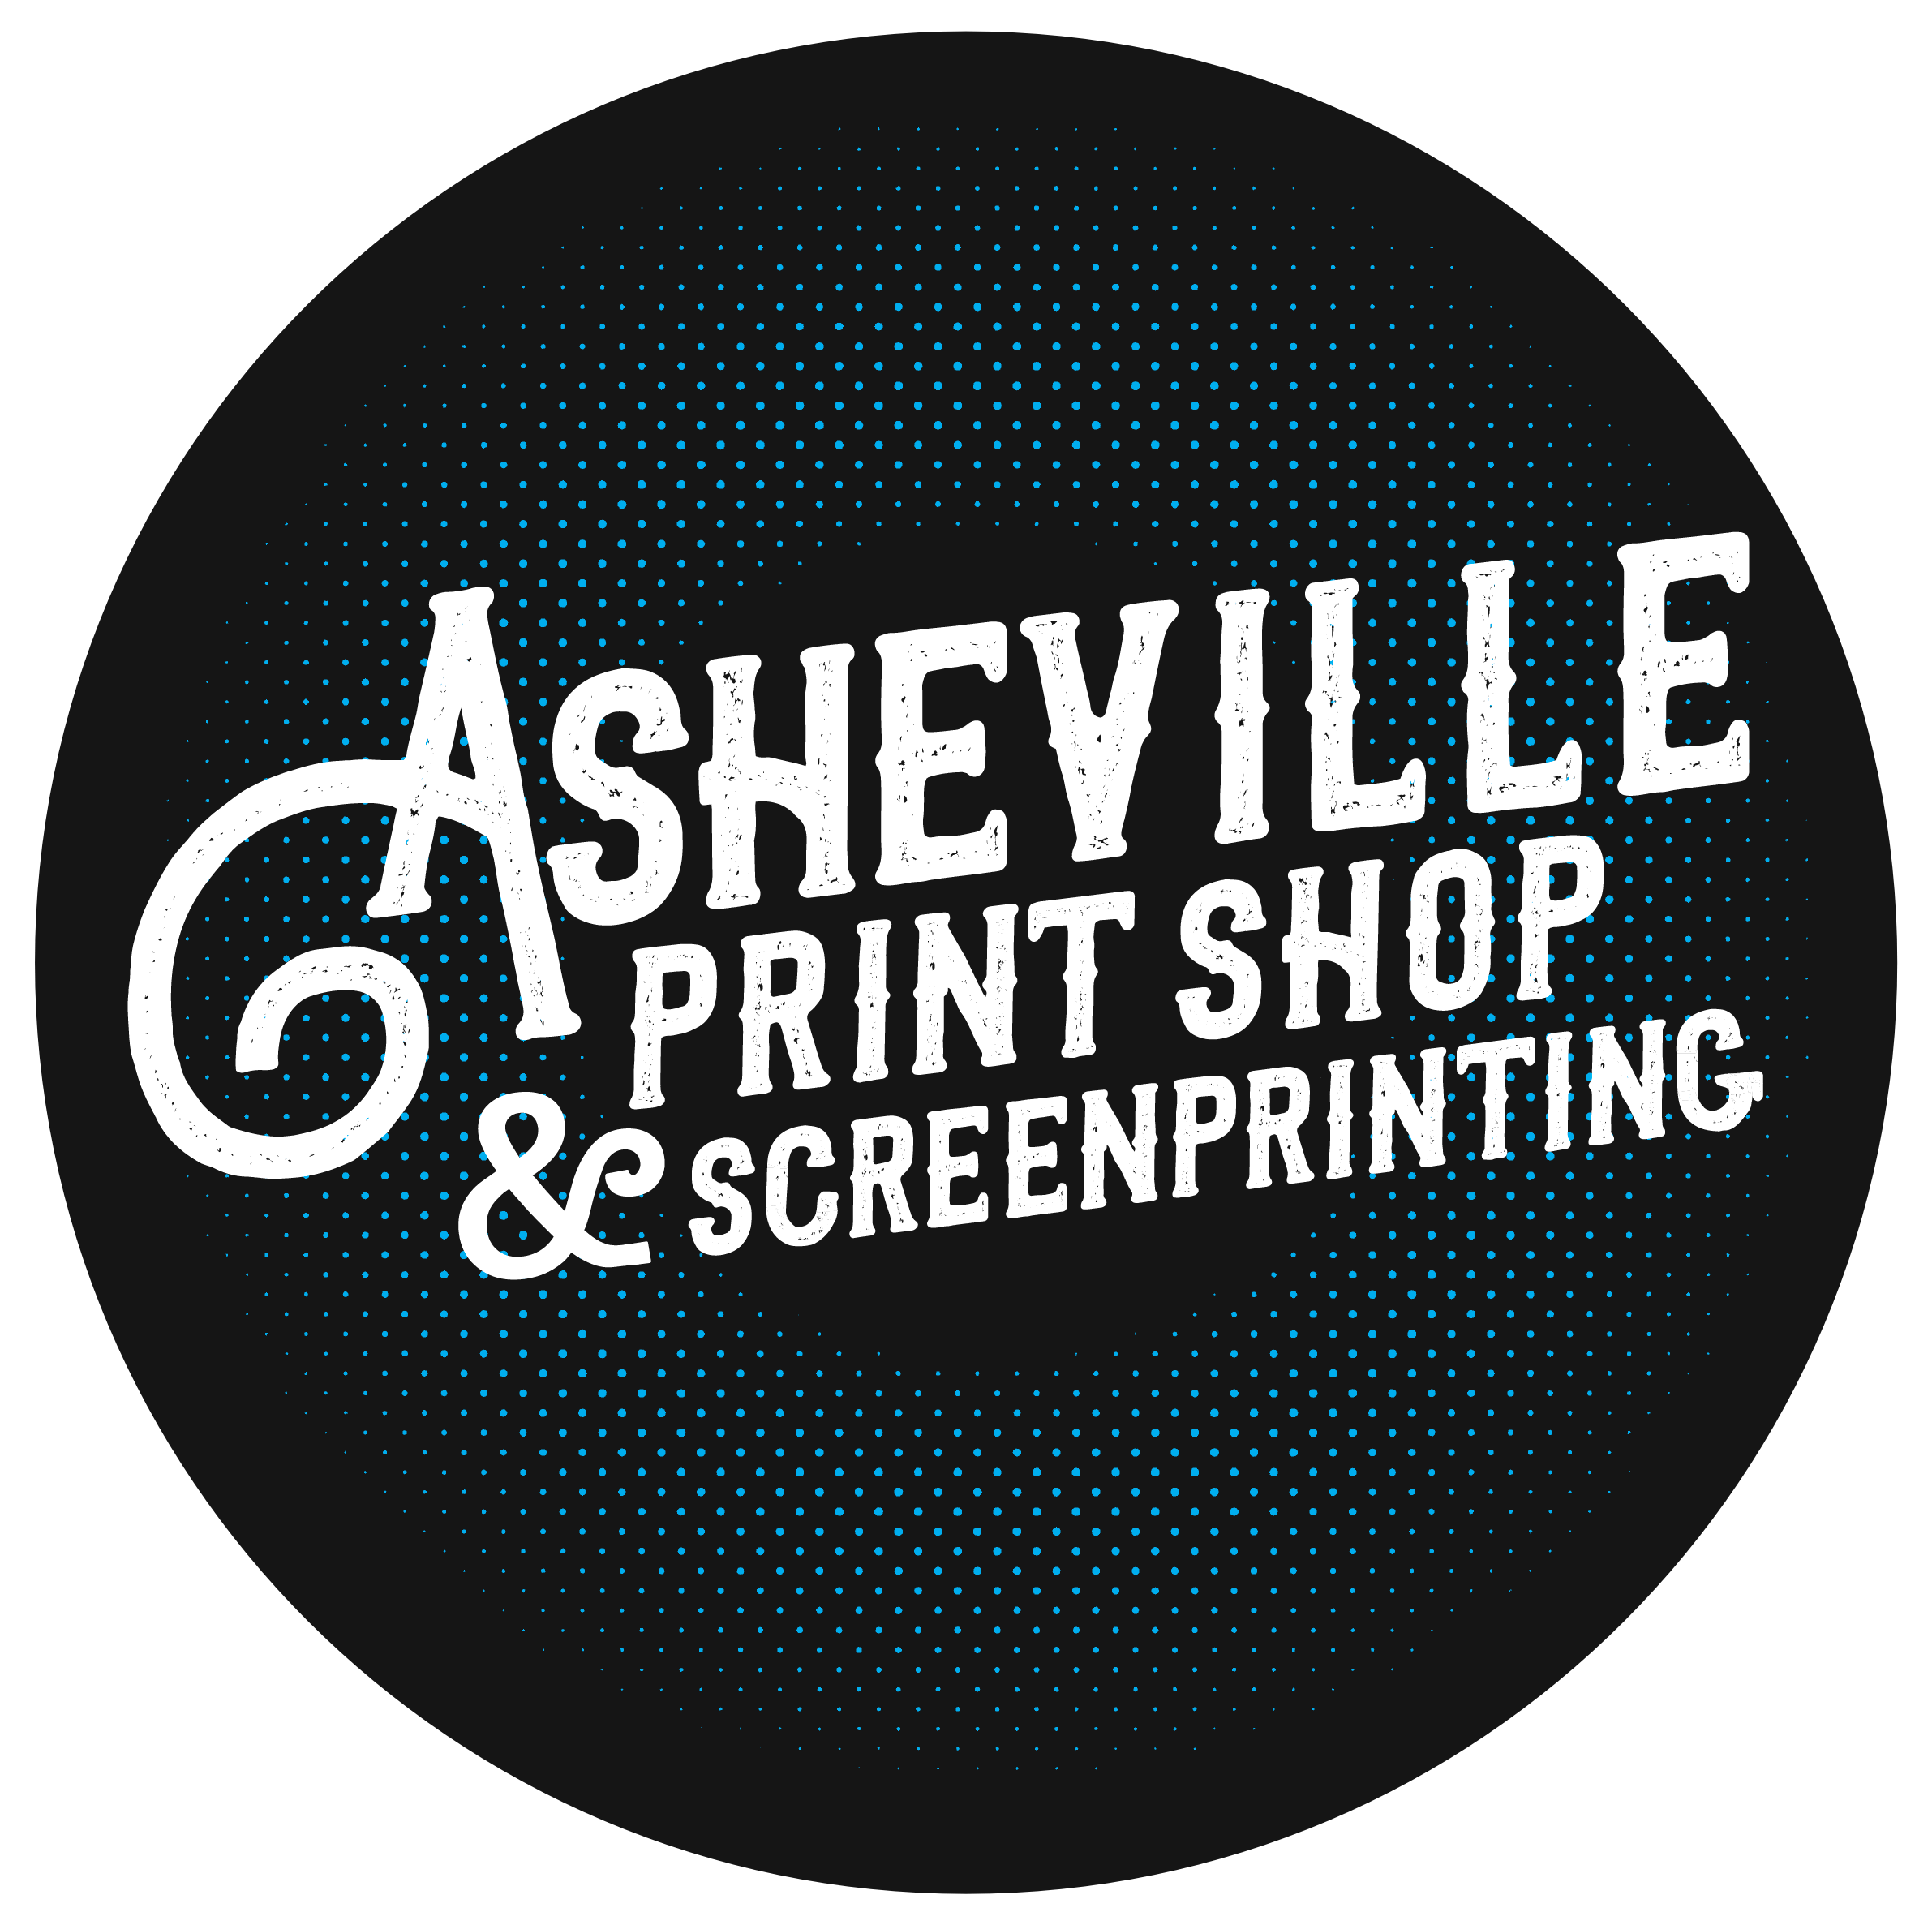 (c) Ashevillescreenprinting.com